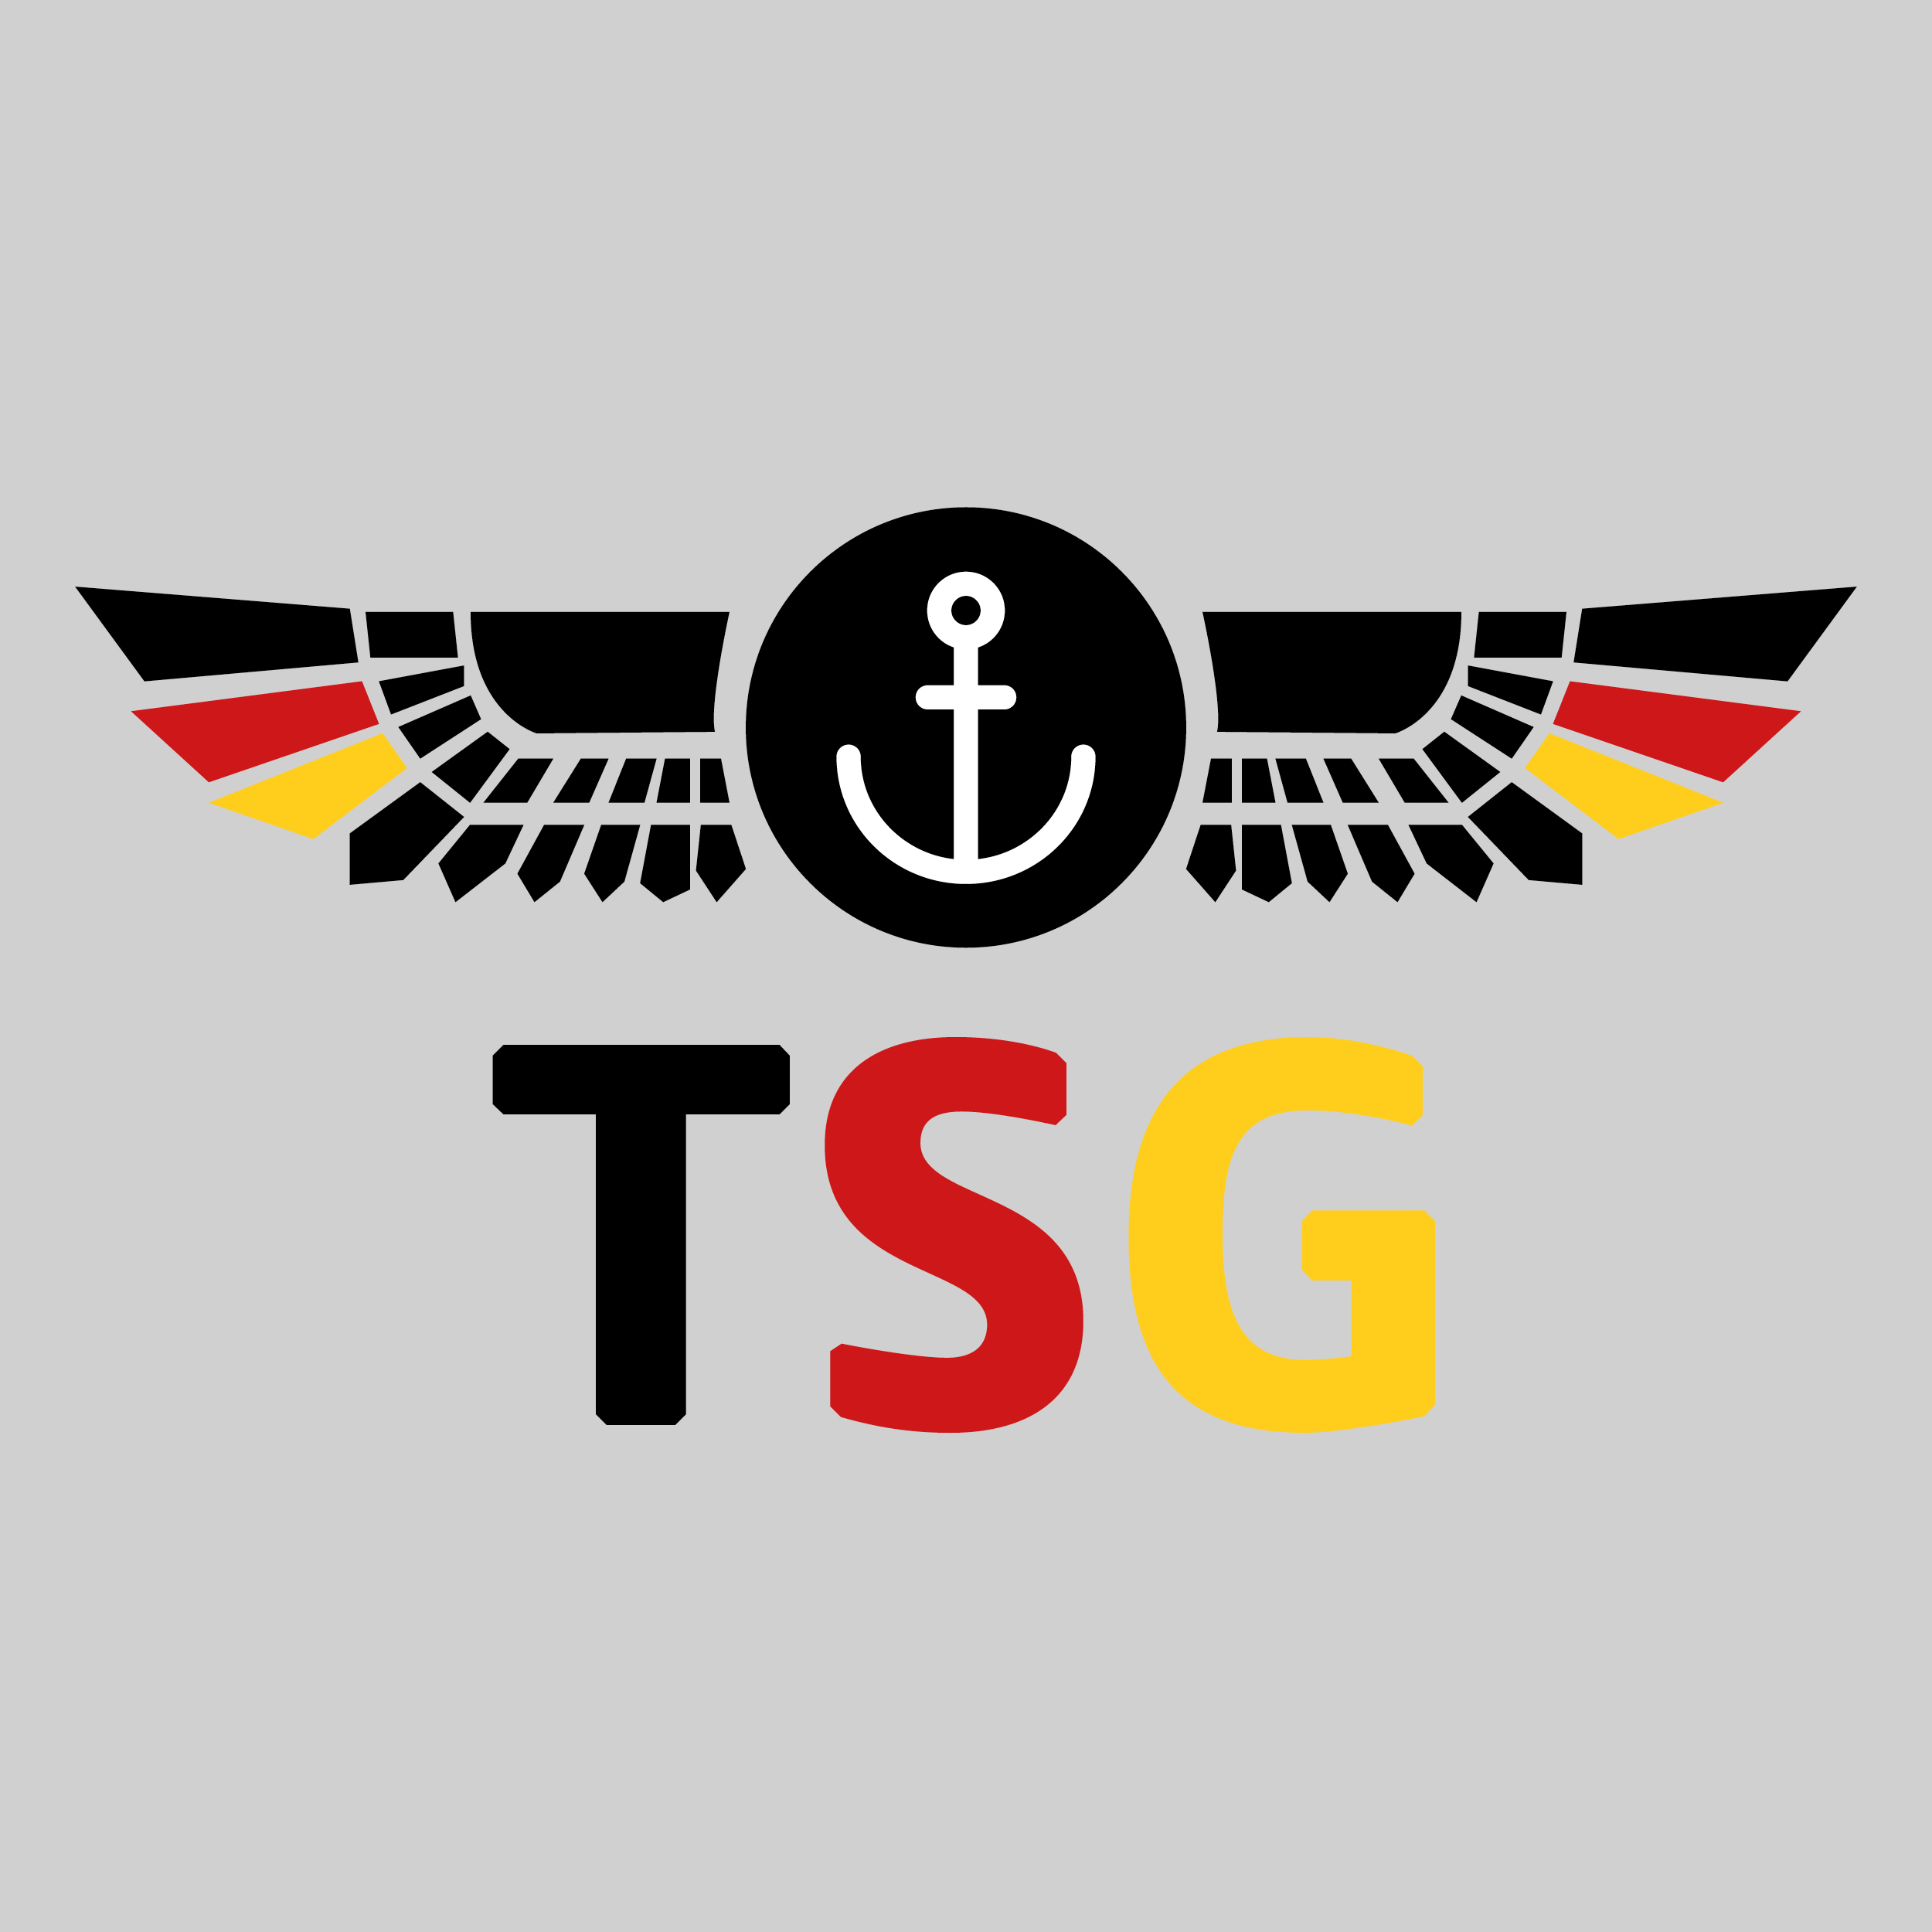 (c) Tsg-germany.de